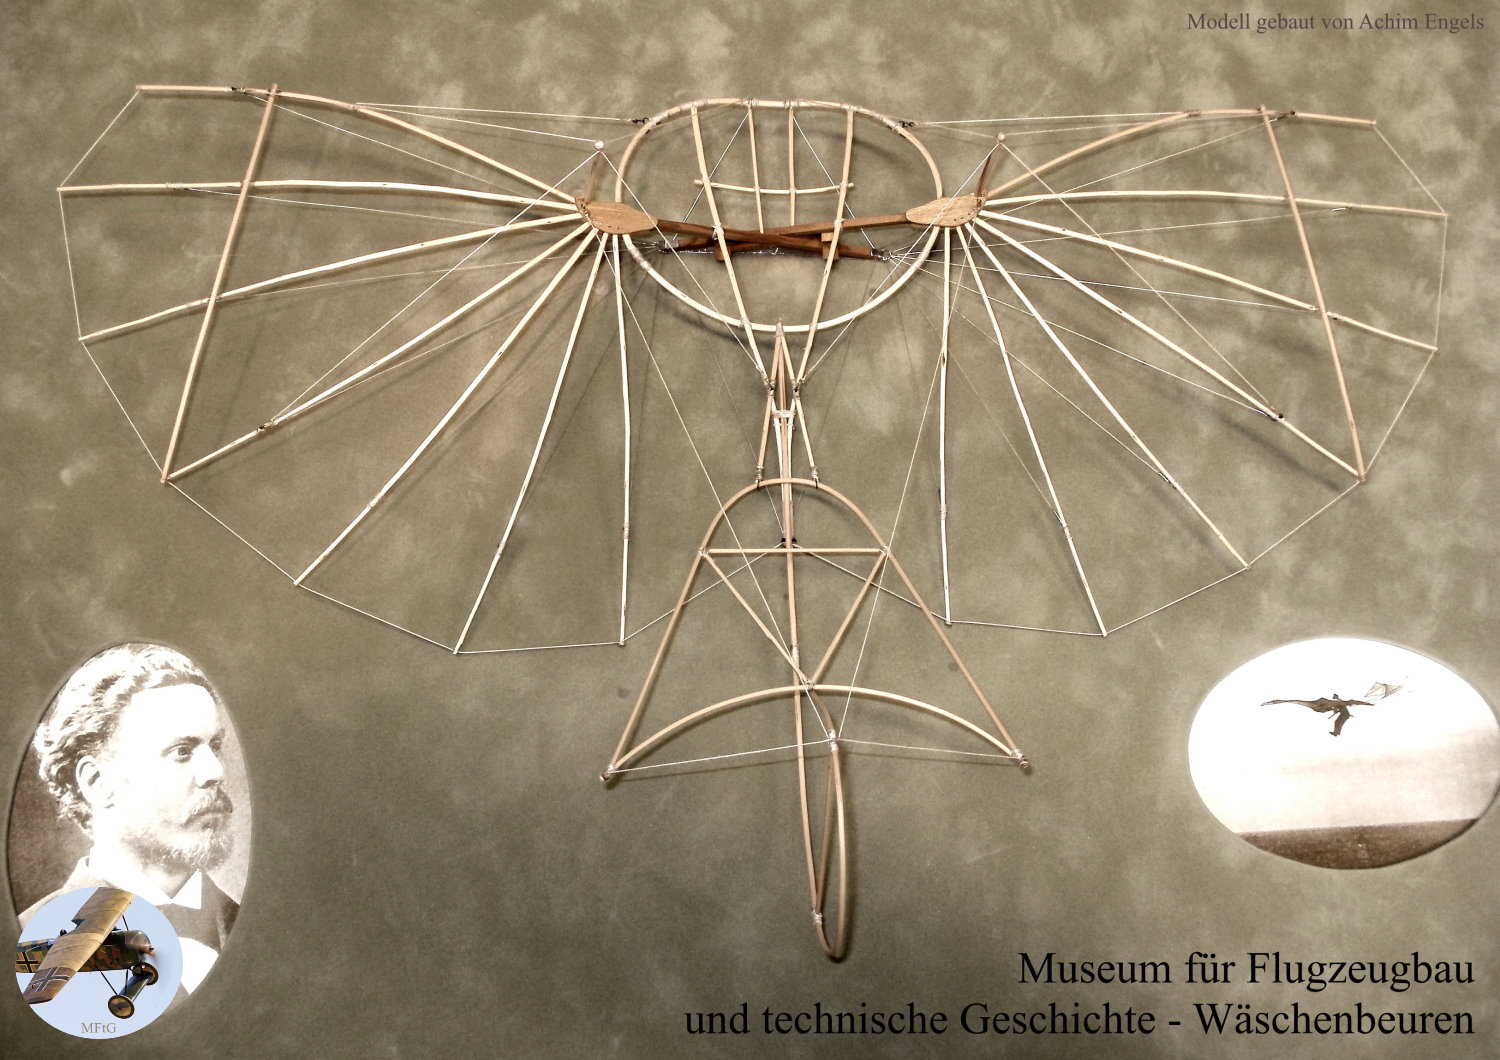 Museum für Flugzeugbau und technische Geschichte - Sammlung von Modellen im Gedenken an Otto Lilienthal. Hier sein Deriwtz-Apparat von 1892